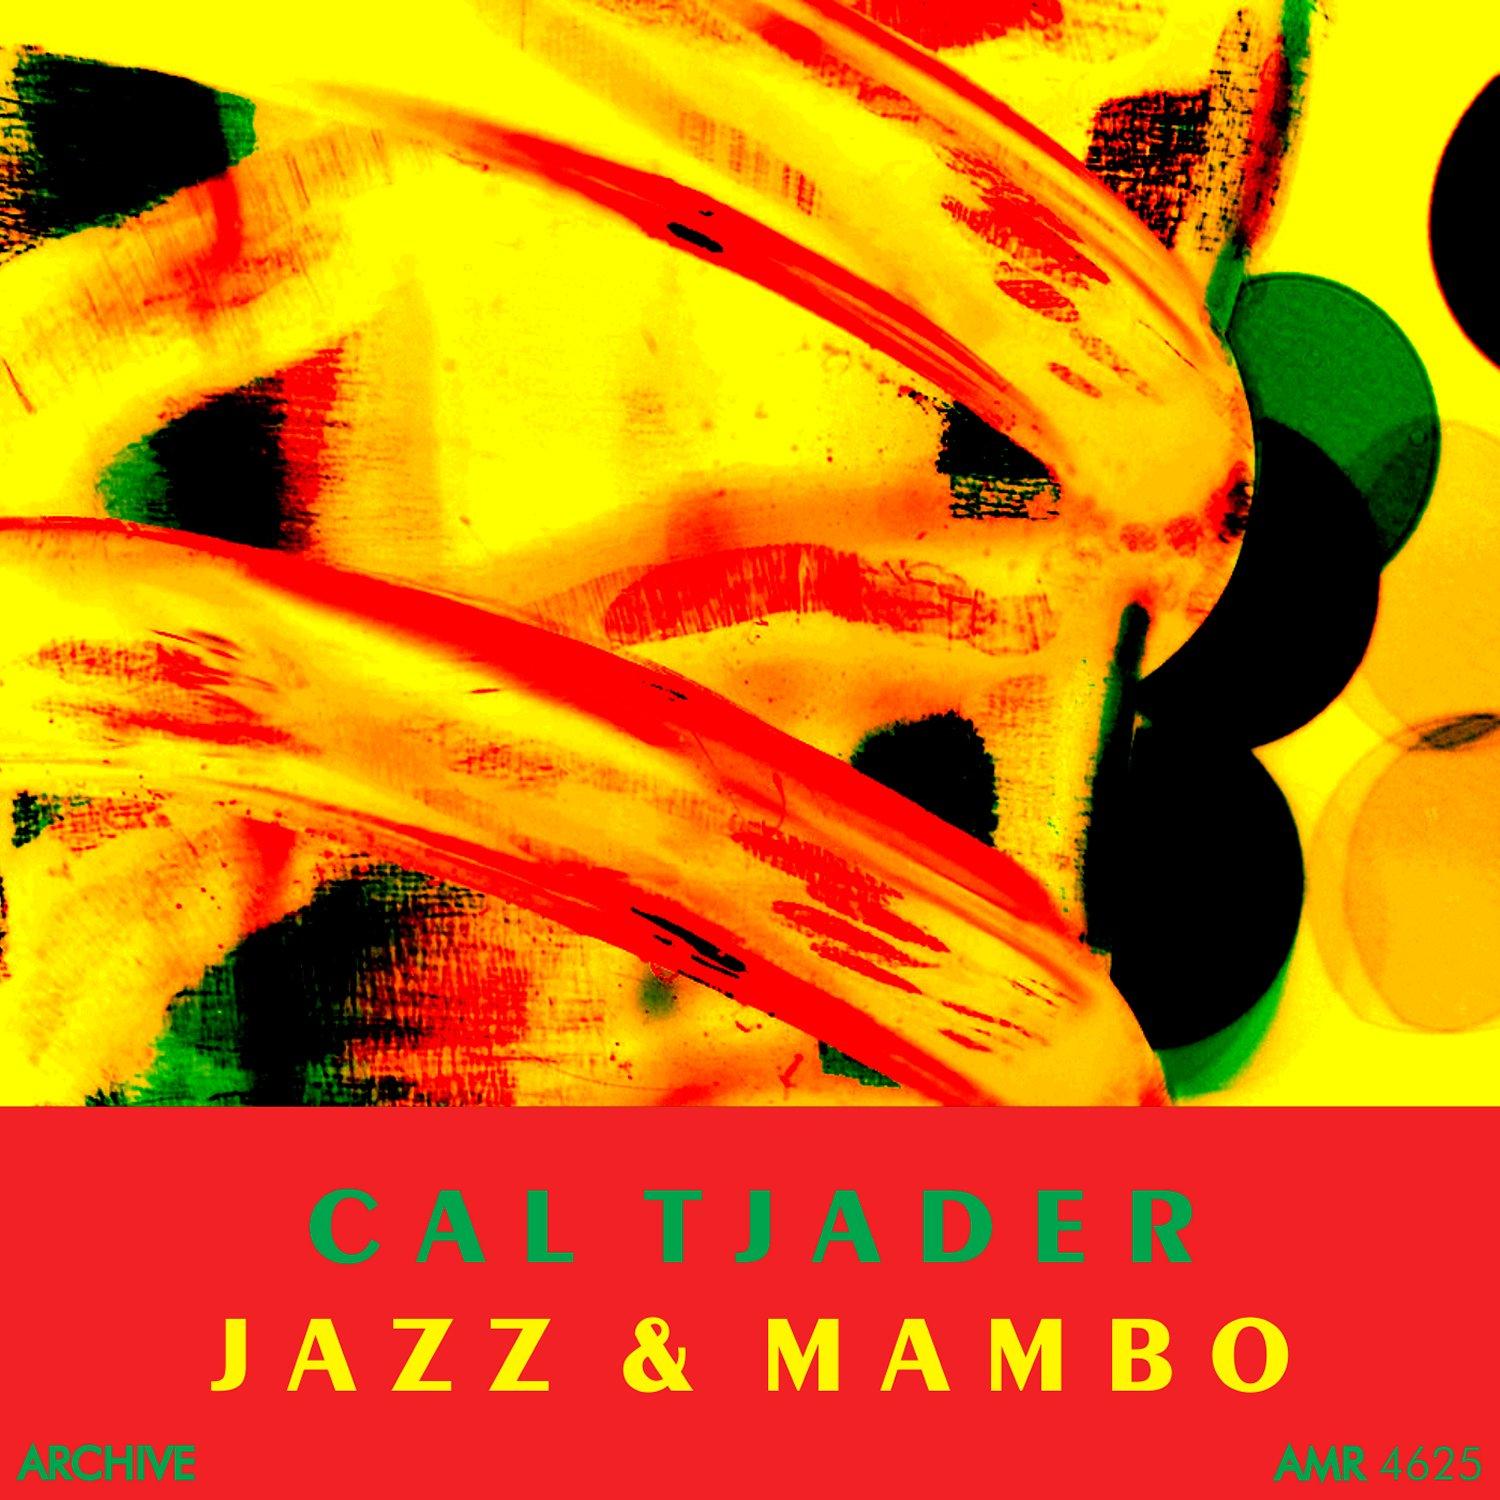 Jazz and Mambo